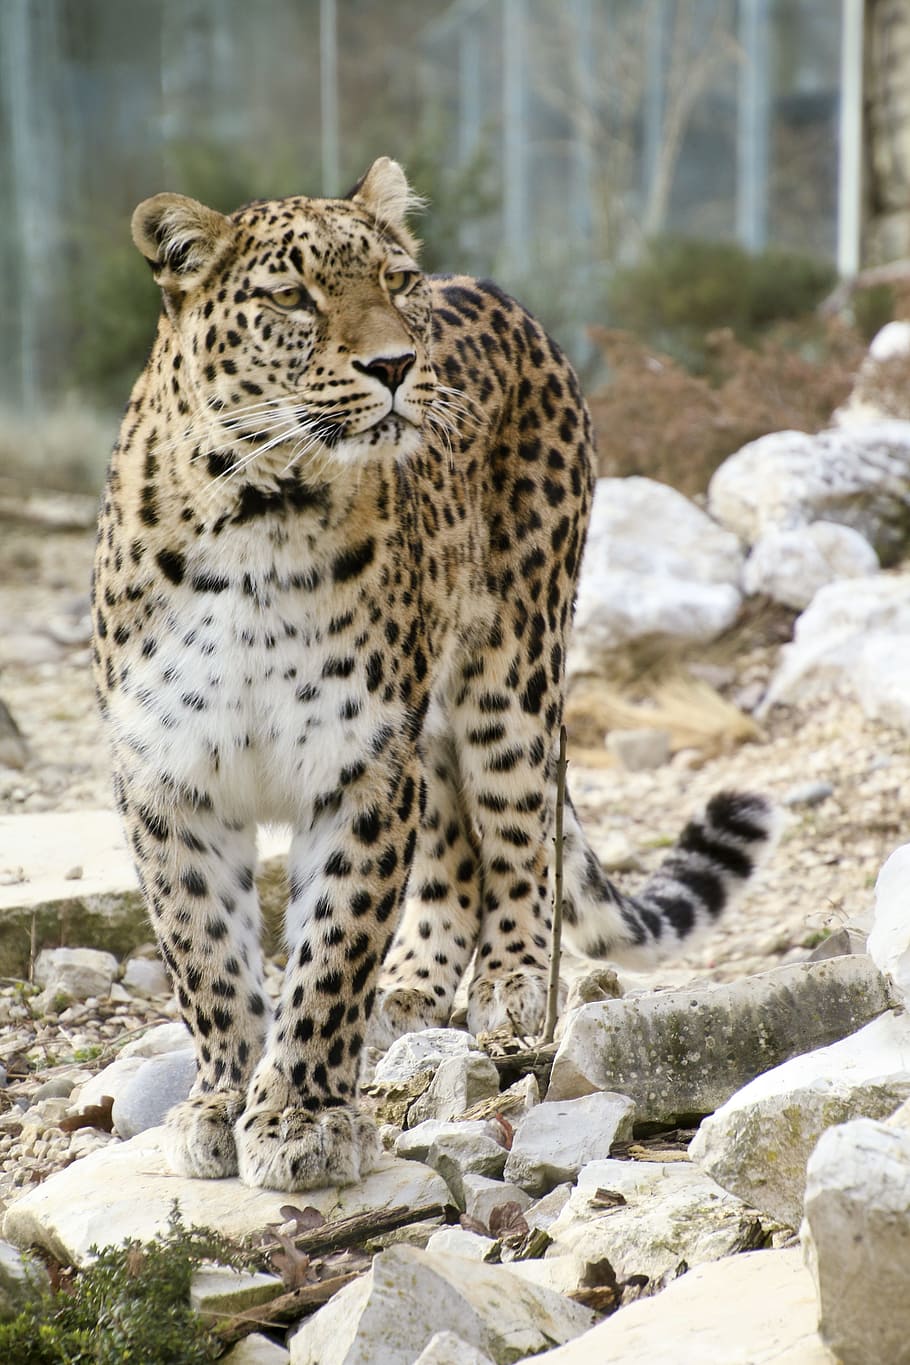 leopard, rocky, surface, daytime, persian leopard, full length portrait, portrait, close, view, face